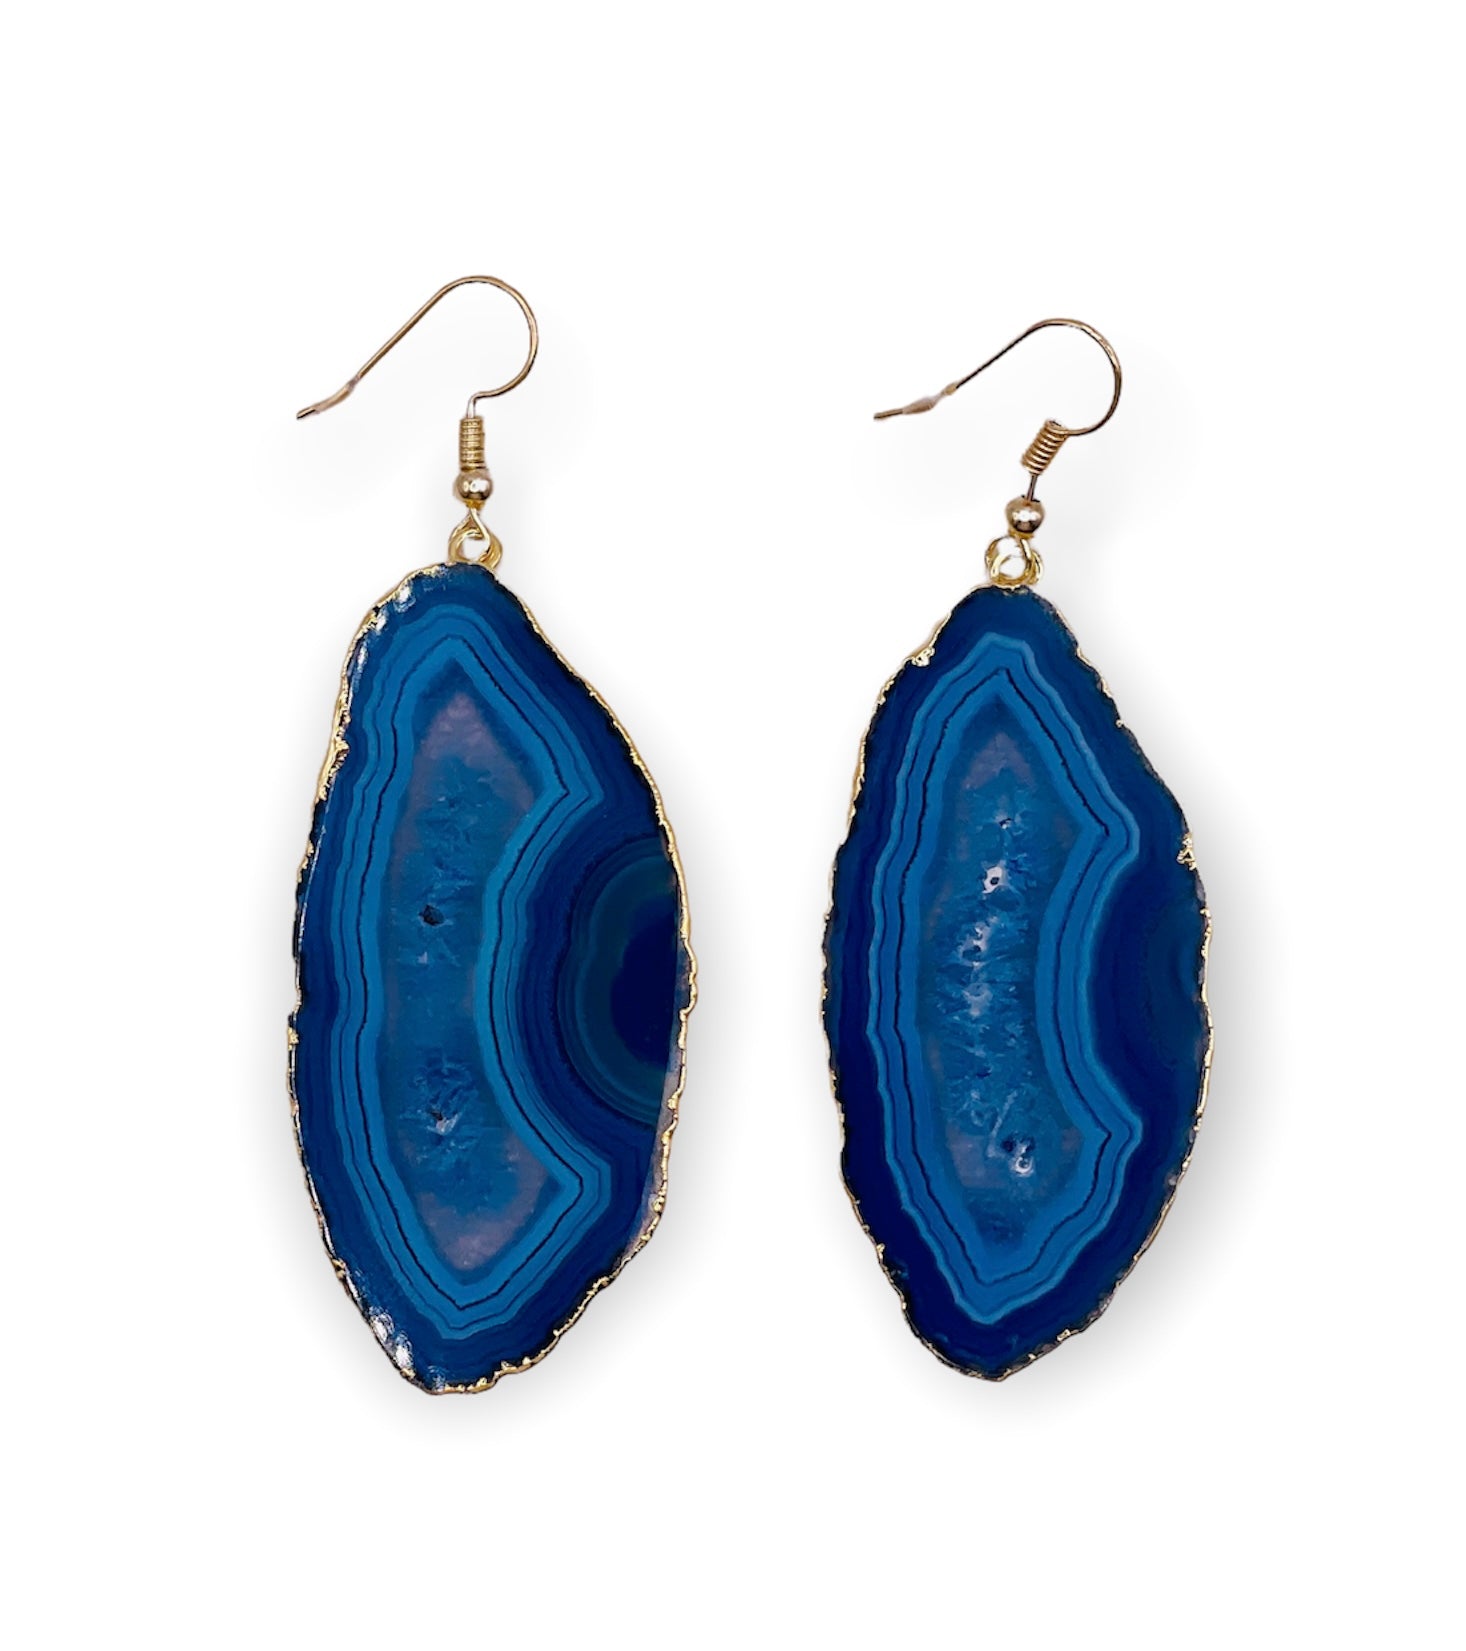 Earrings Blue Agate